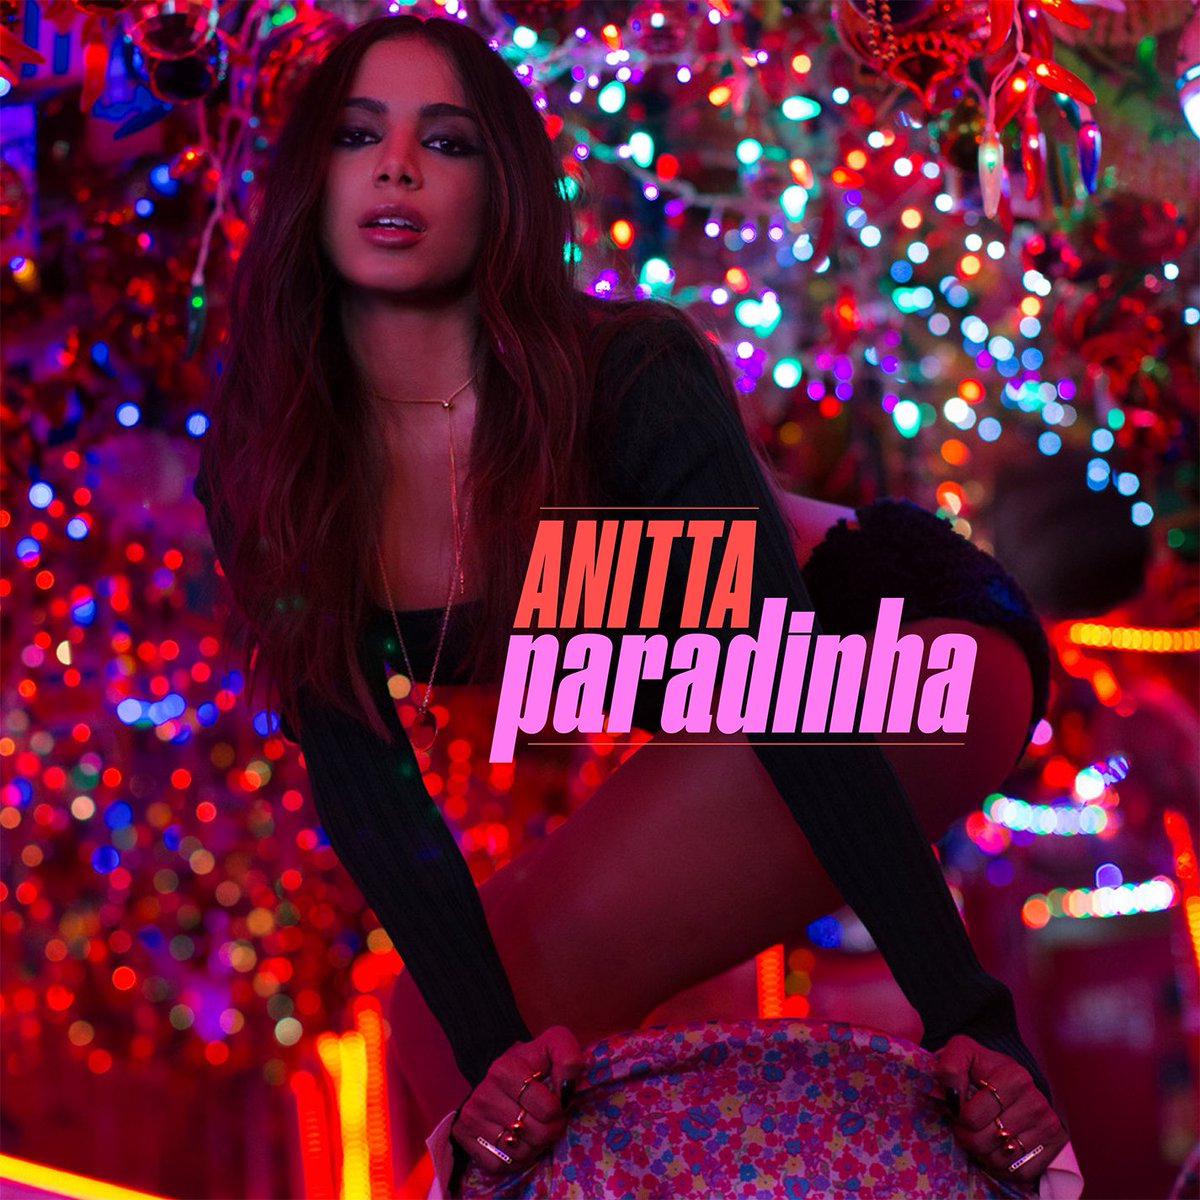 Capa do single "Paradinha", o primeiro da carreira solo internacional da cantora